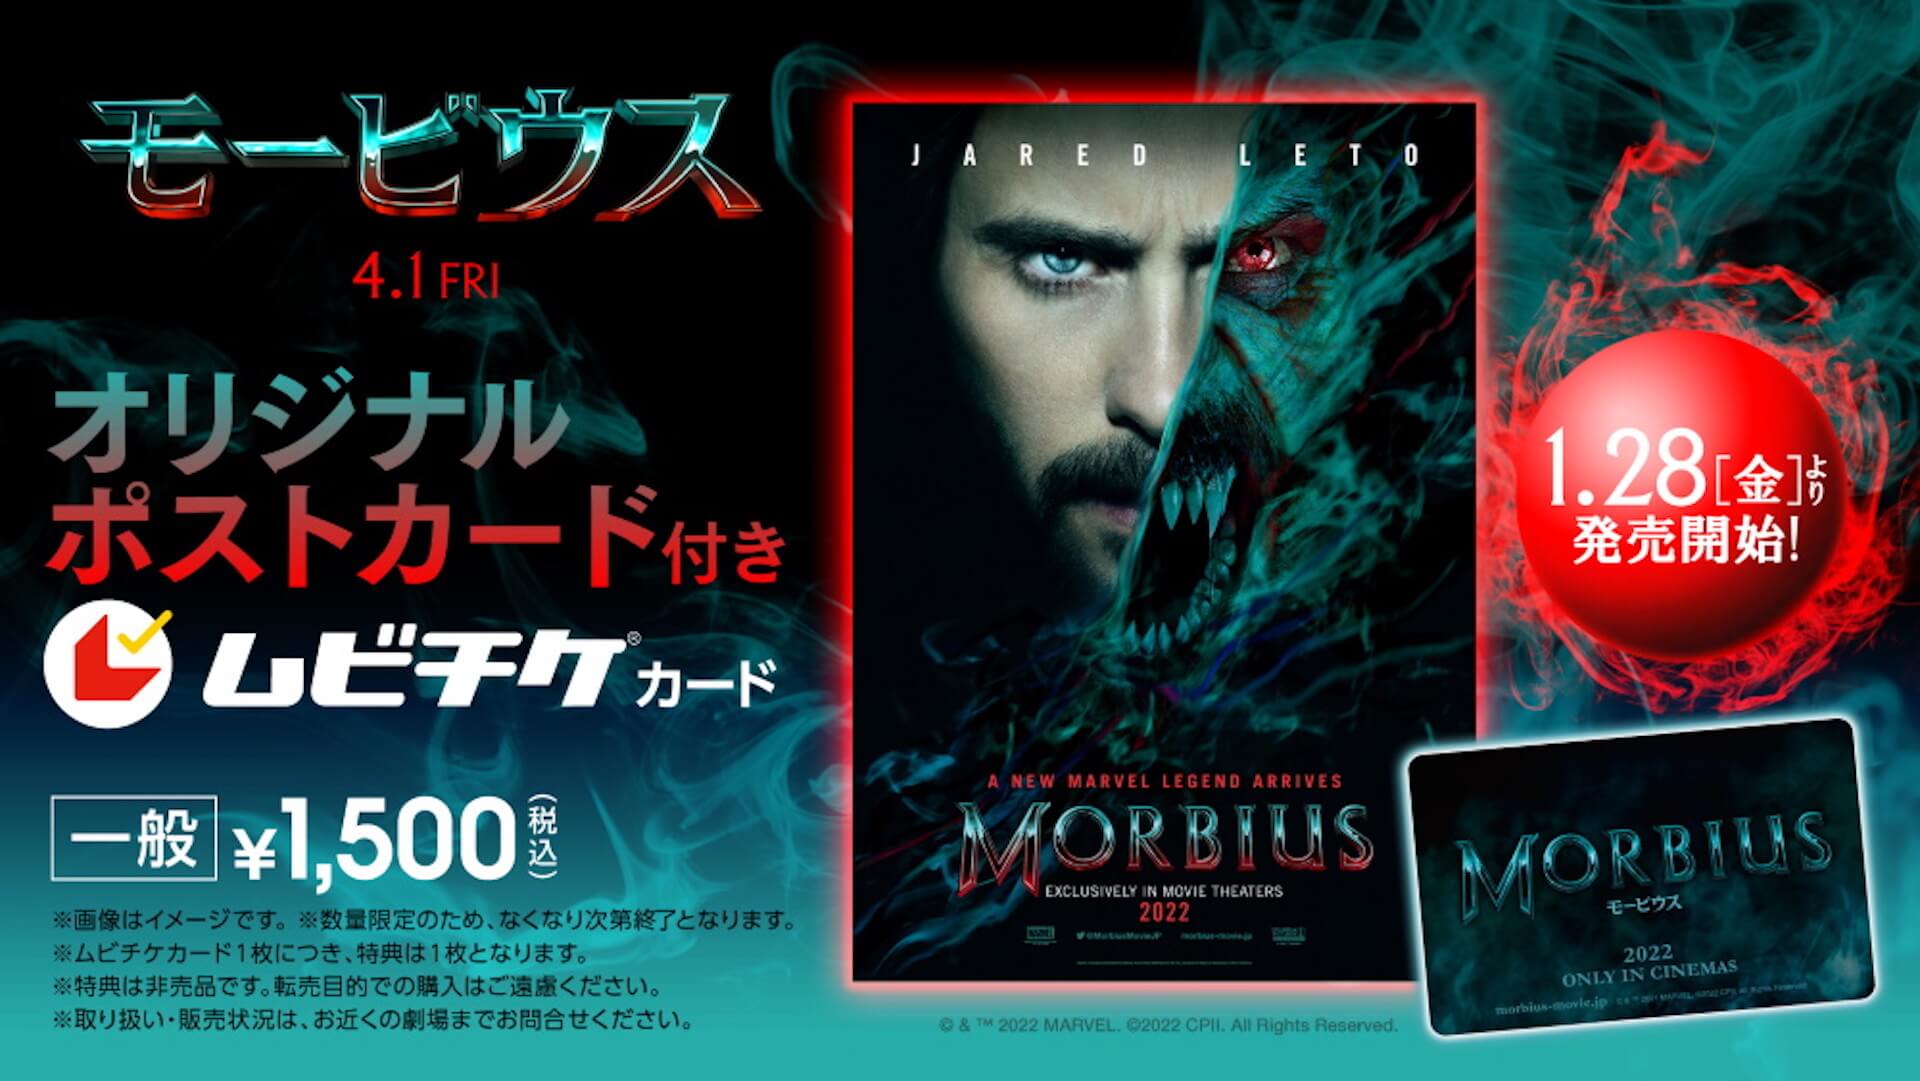 ジャレッド・レト主演、マーベル最新作『モービウス』が4月1日に日米同時公開決定！日本版ポスターも解禁 film220121-morbius-1